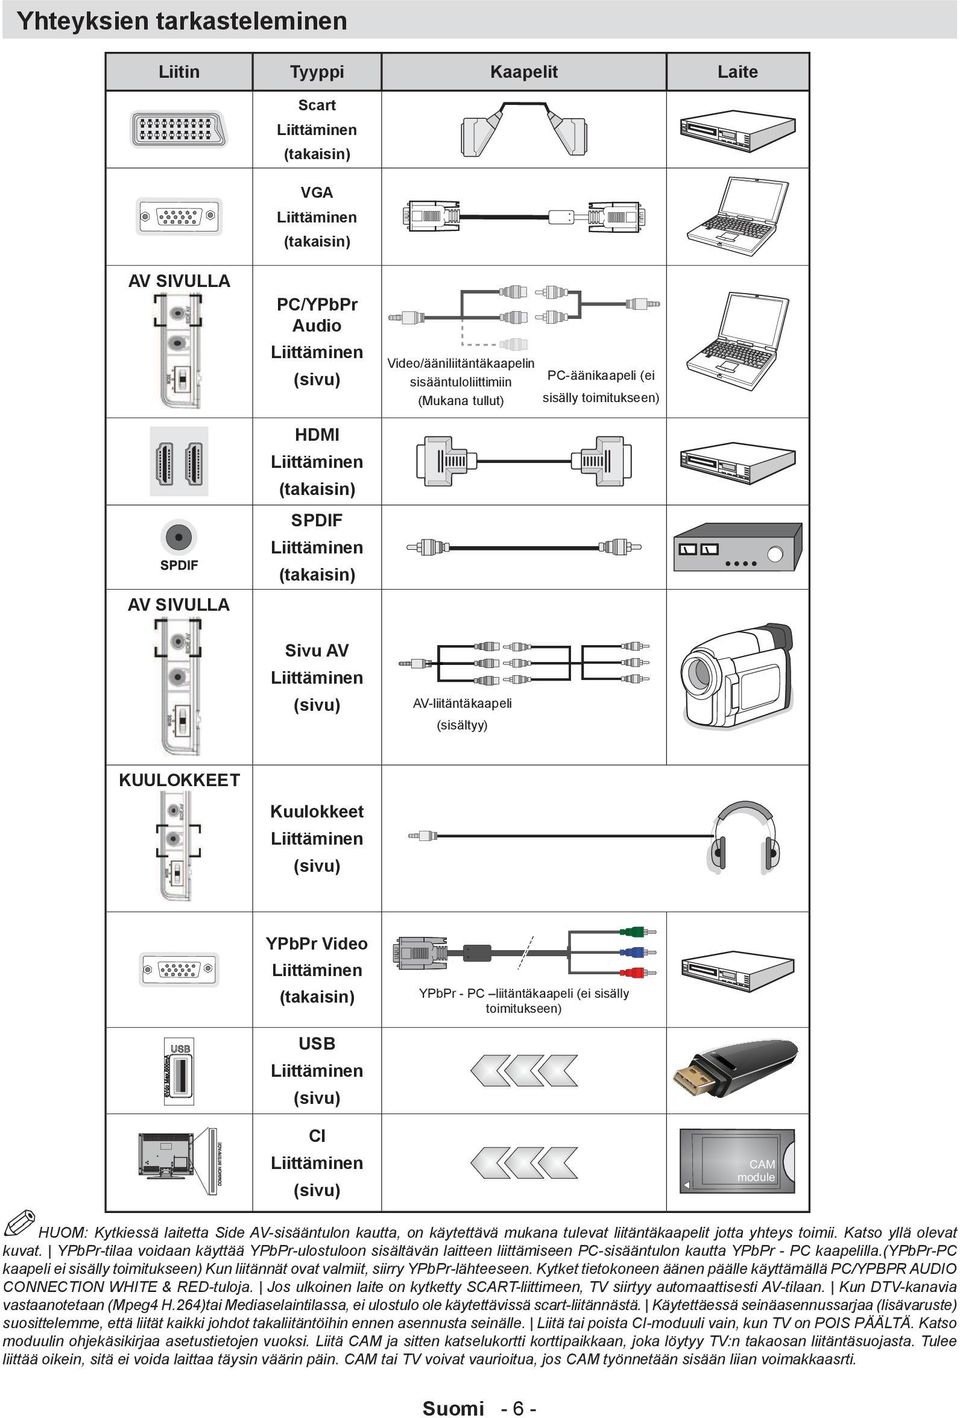 KUULOKKEET Kuulokkeet Liittäminen (sivu) YPbPr Video Liittäminen (takaisin) USB Liittäminen (sivu) YPbPr - PC liitäntäkaapeli (ei sisälly toimitukseen) CI Liittäminen (sivu) HUOM: Kytkiessä laitetta